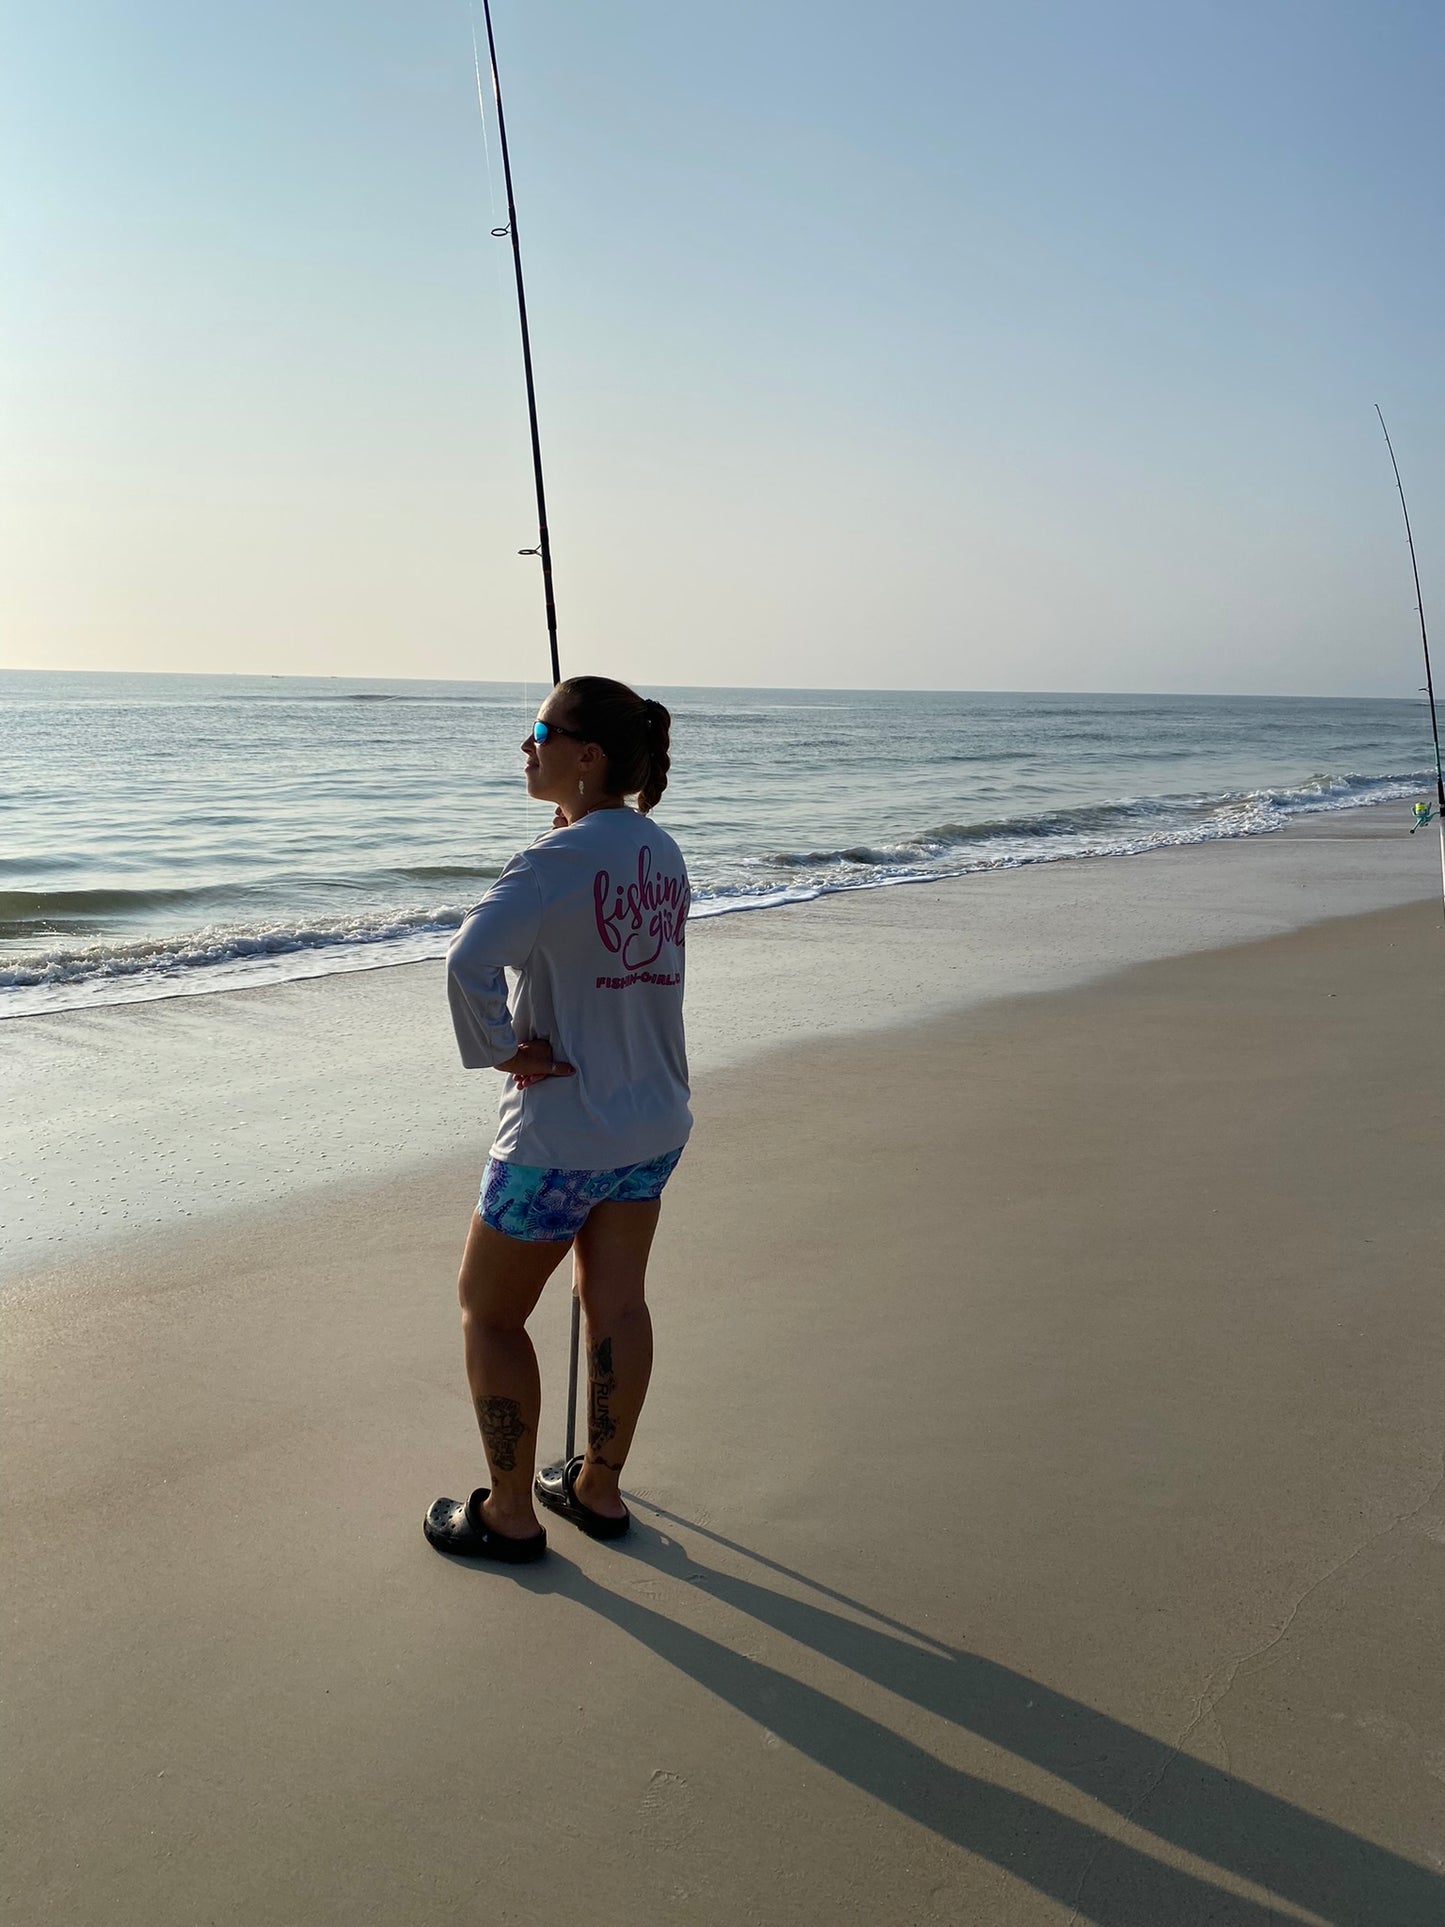 Fishin' Girl UV Performace Sunshirt